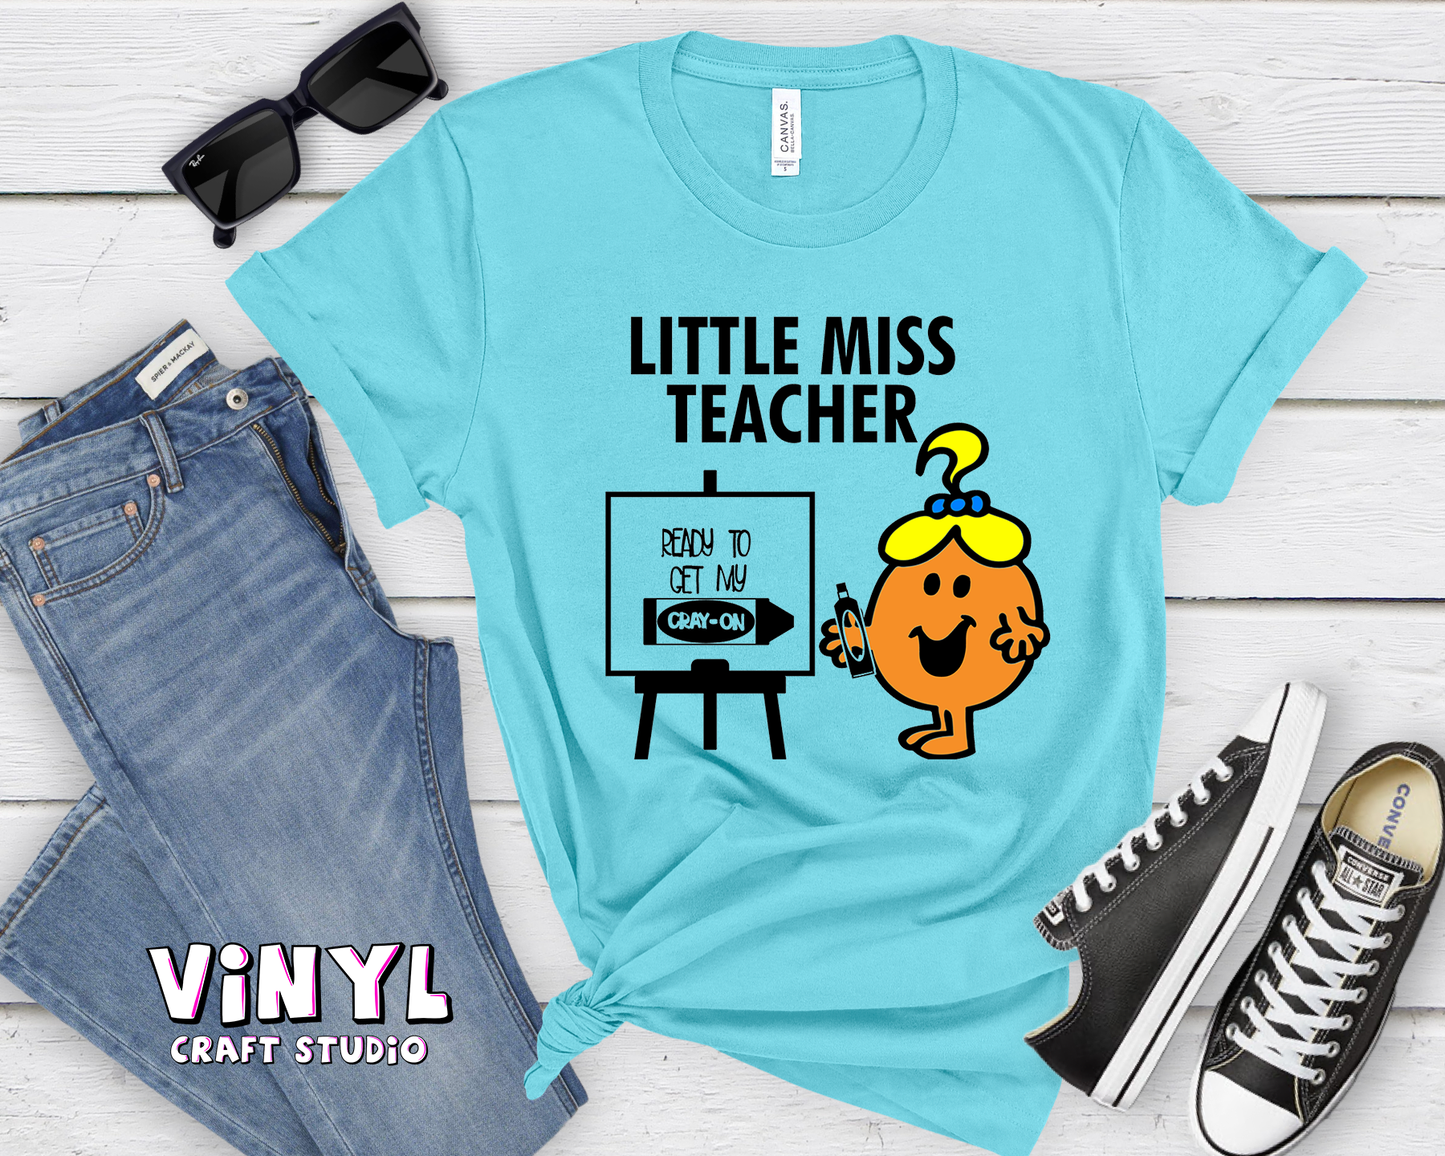 197.) Little Miss Teacher